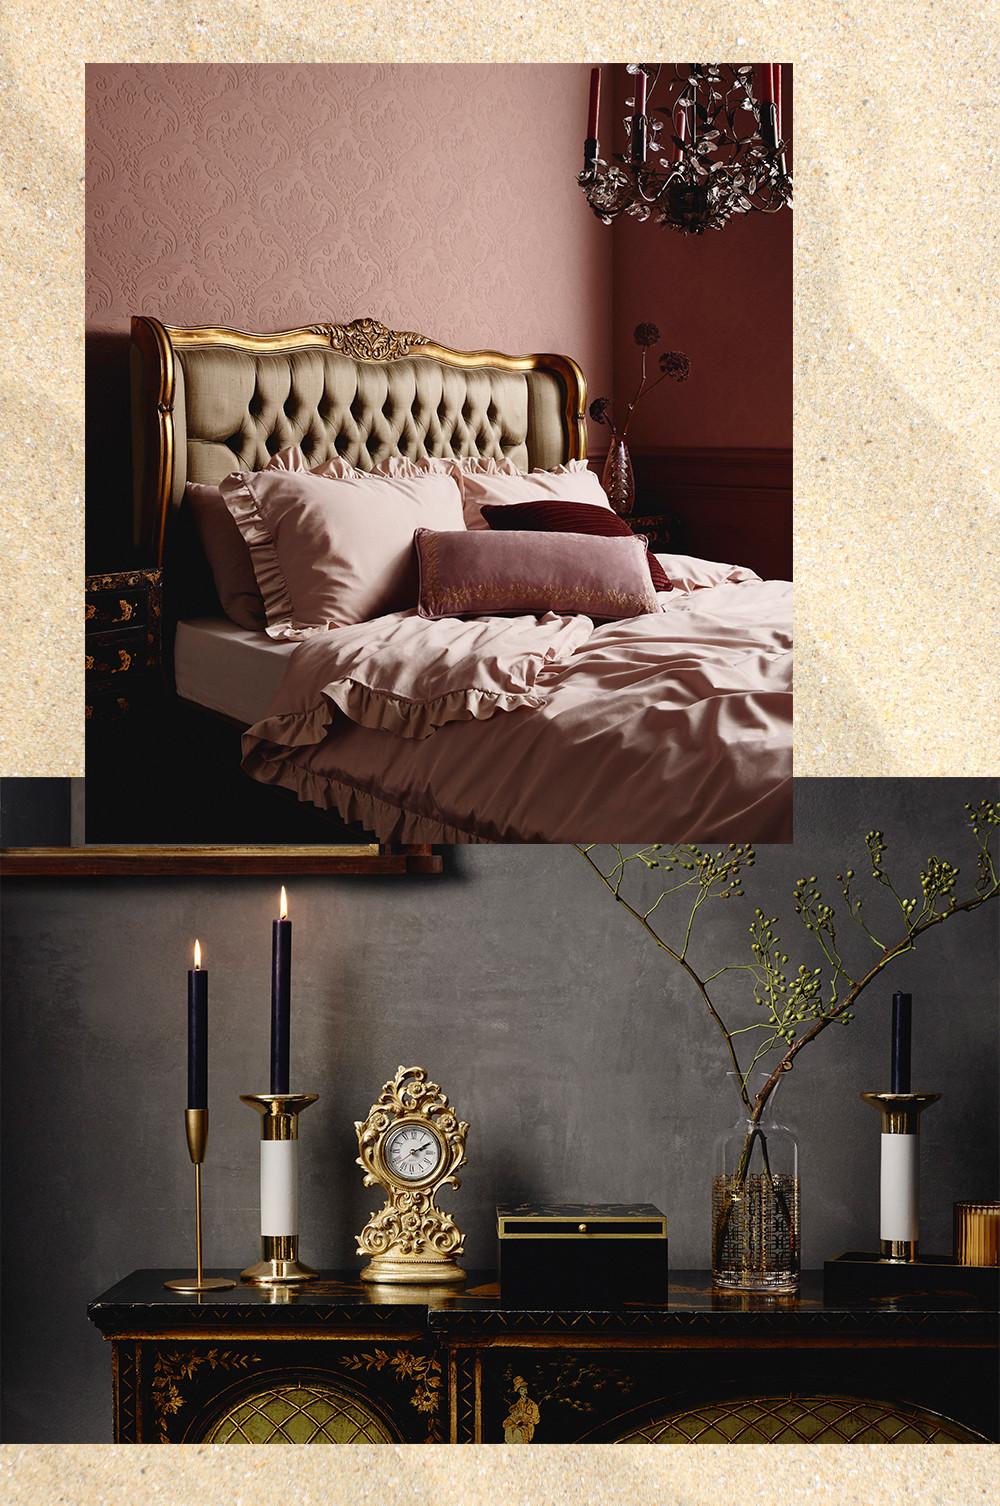 Immagine di una camera da letto lussuosa con biancheria da letto rosa, candele e accessori dorati